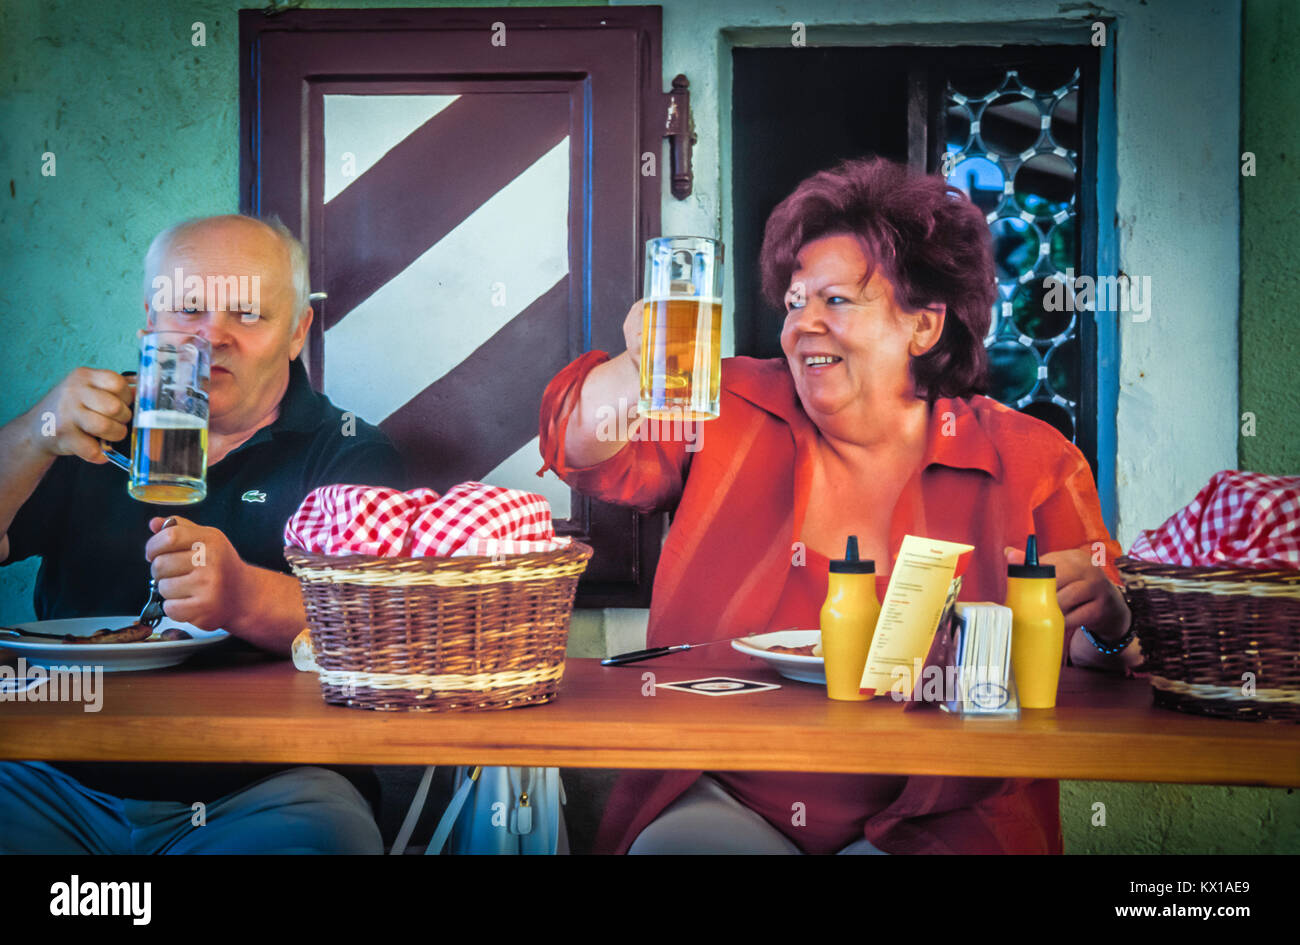 European German senior citizens. Stock Photo